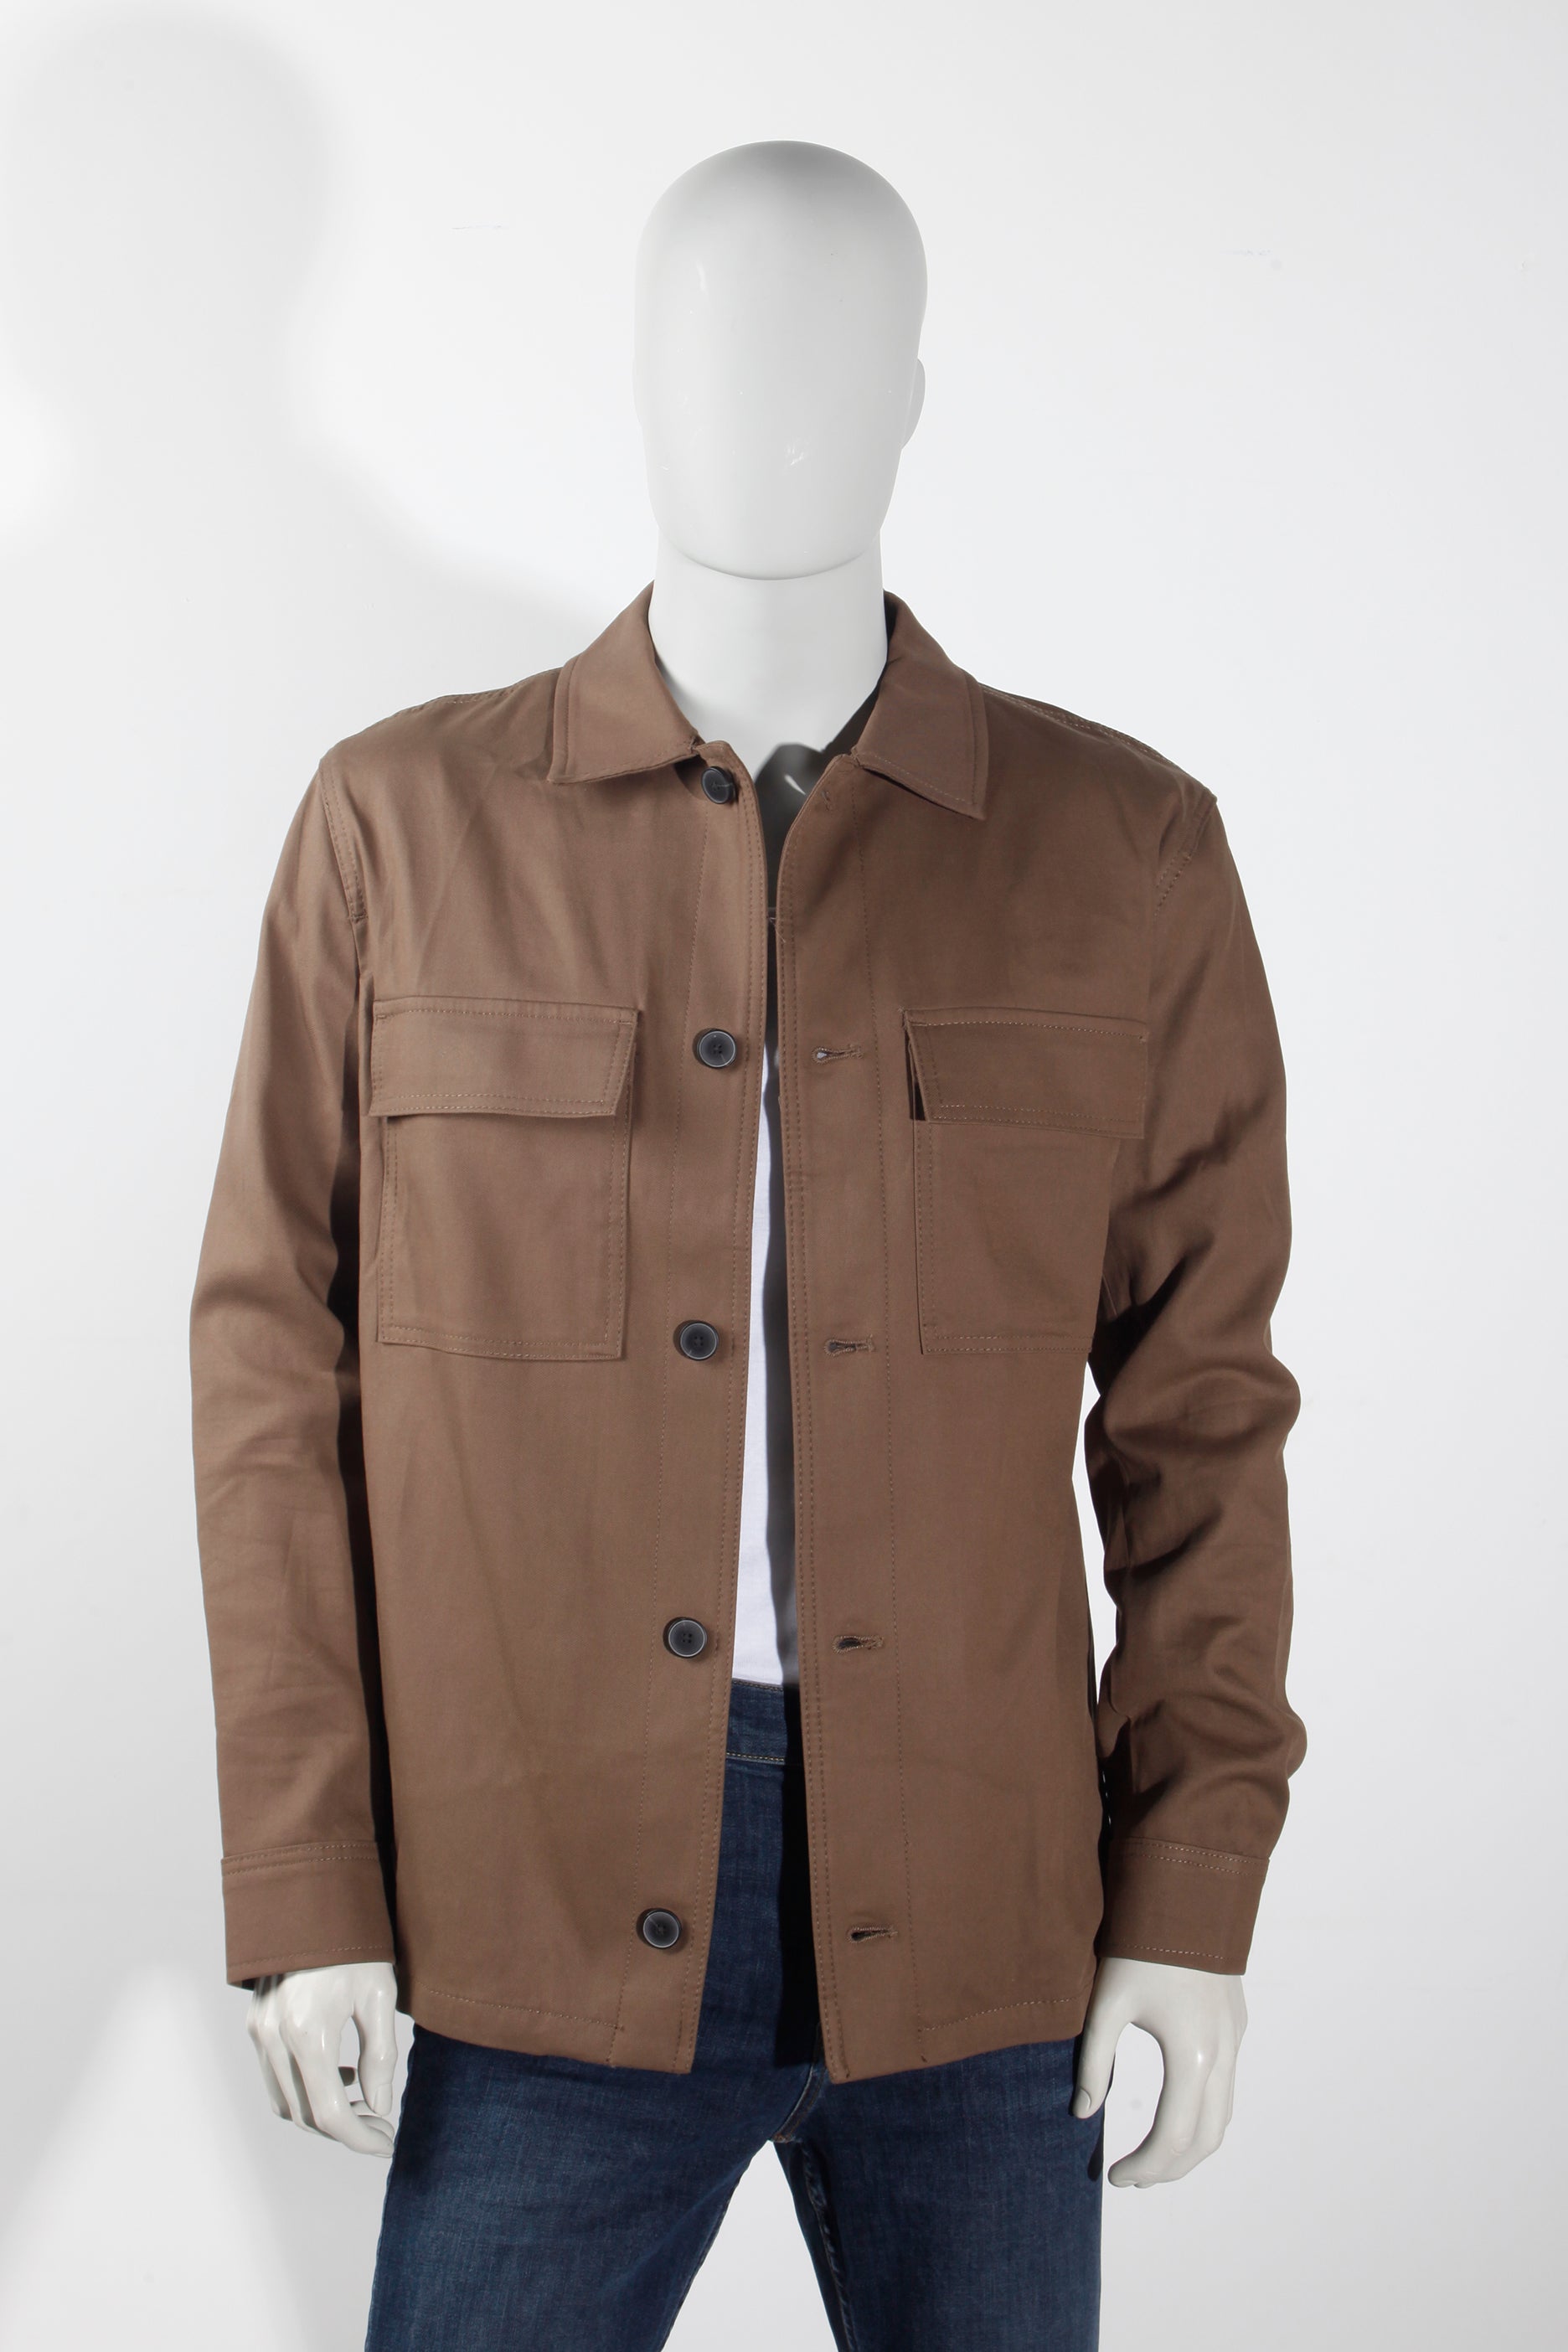 Khaki Brown Jacket (M)